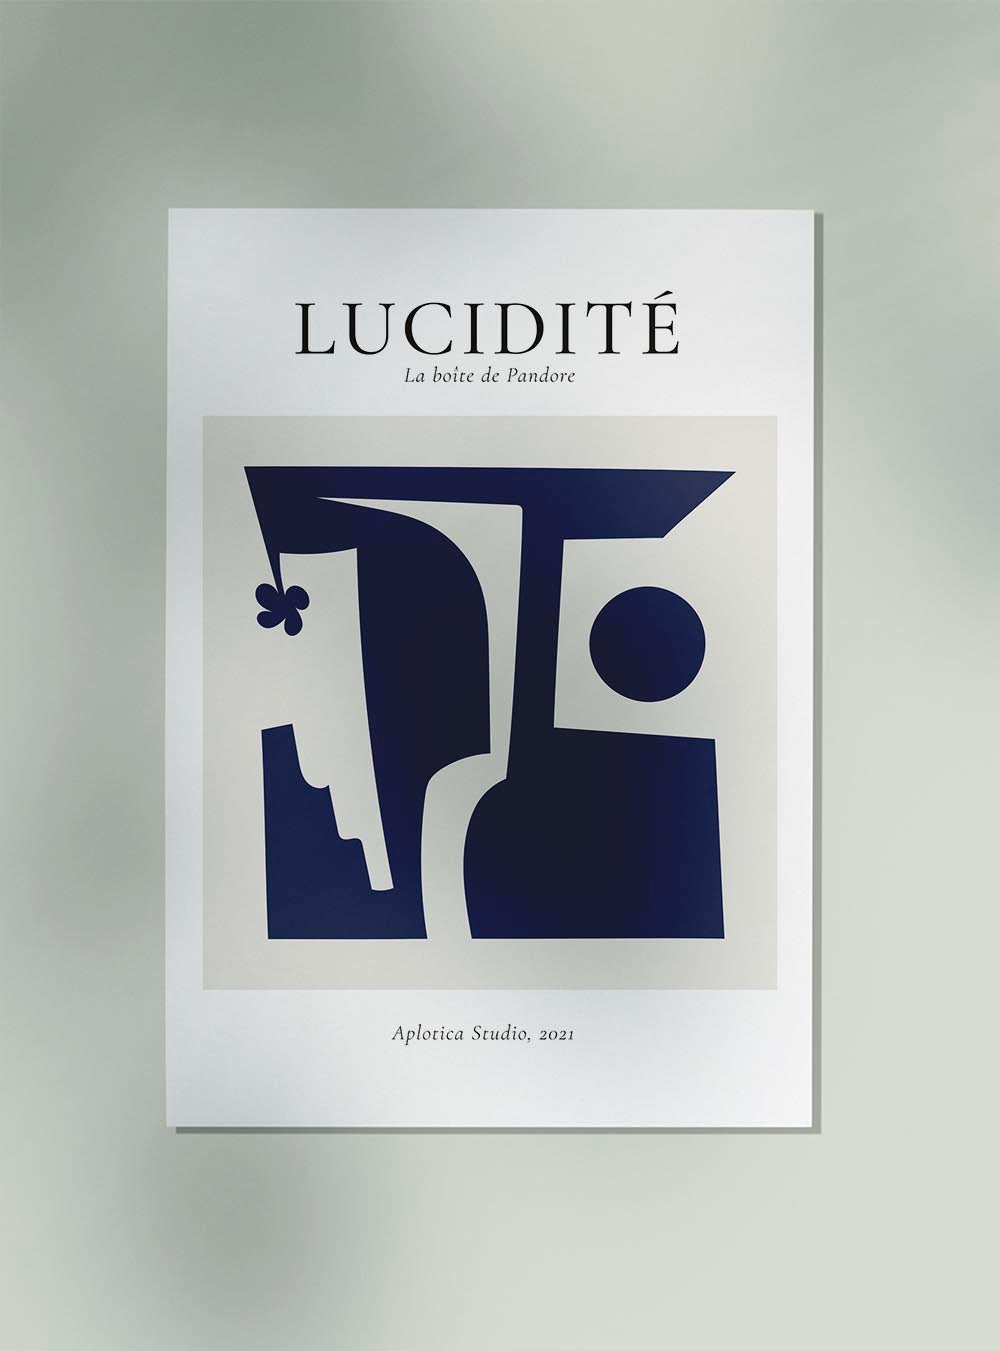 Lucidité Art Print by Bastien Bouta